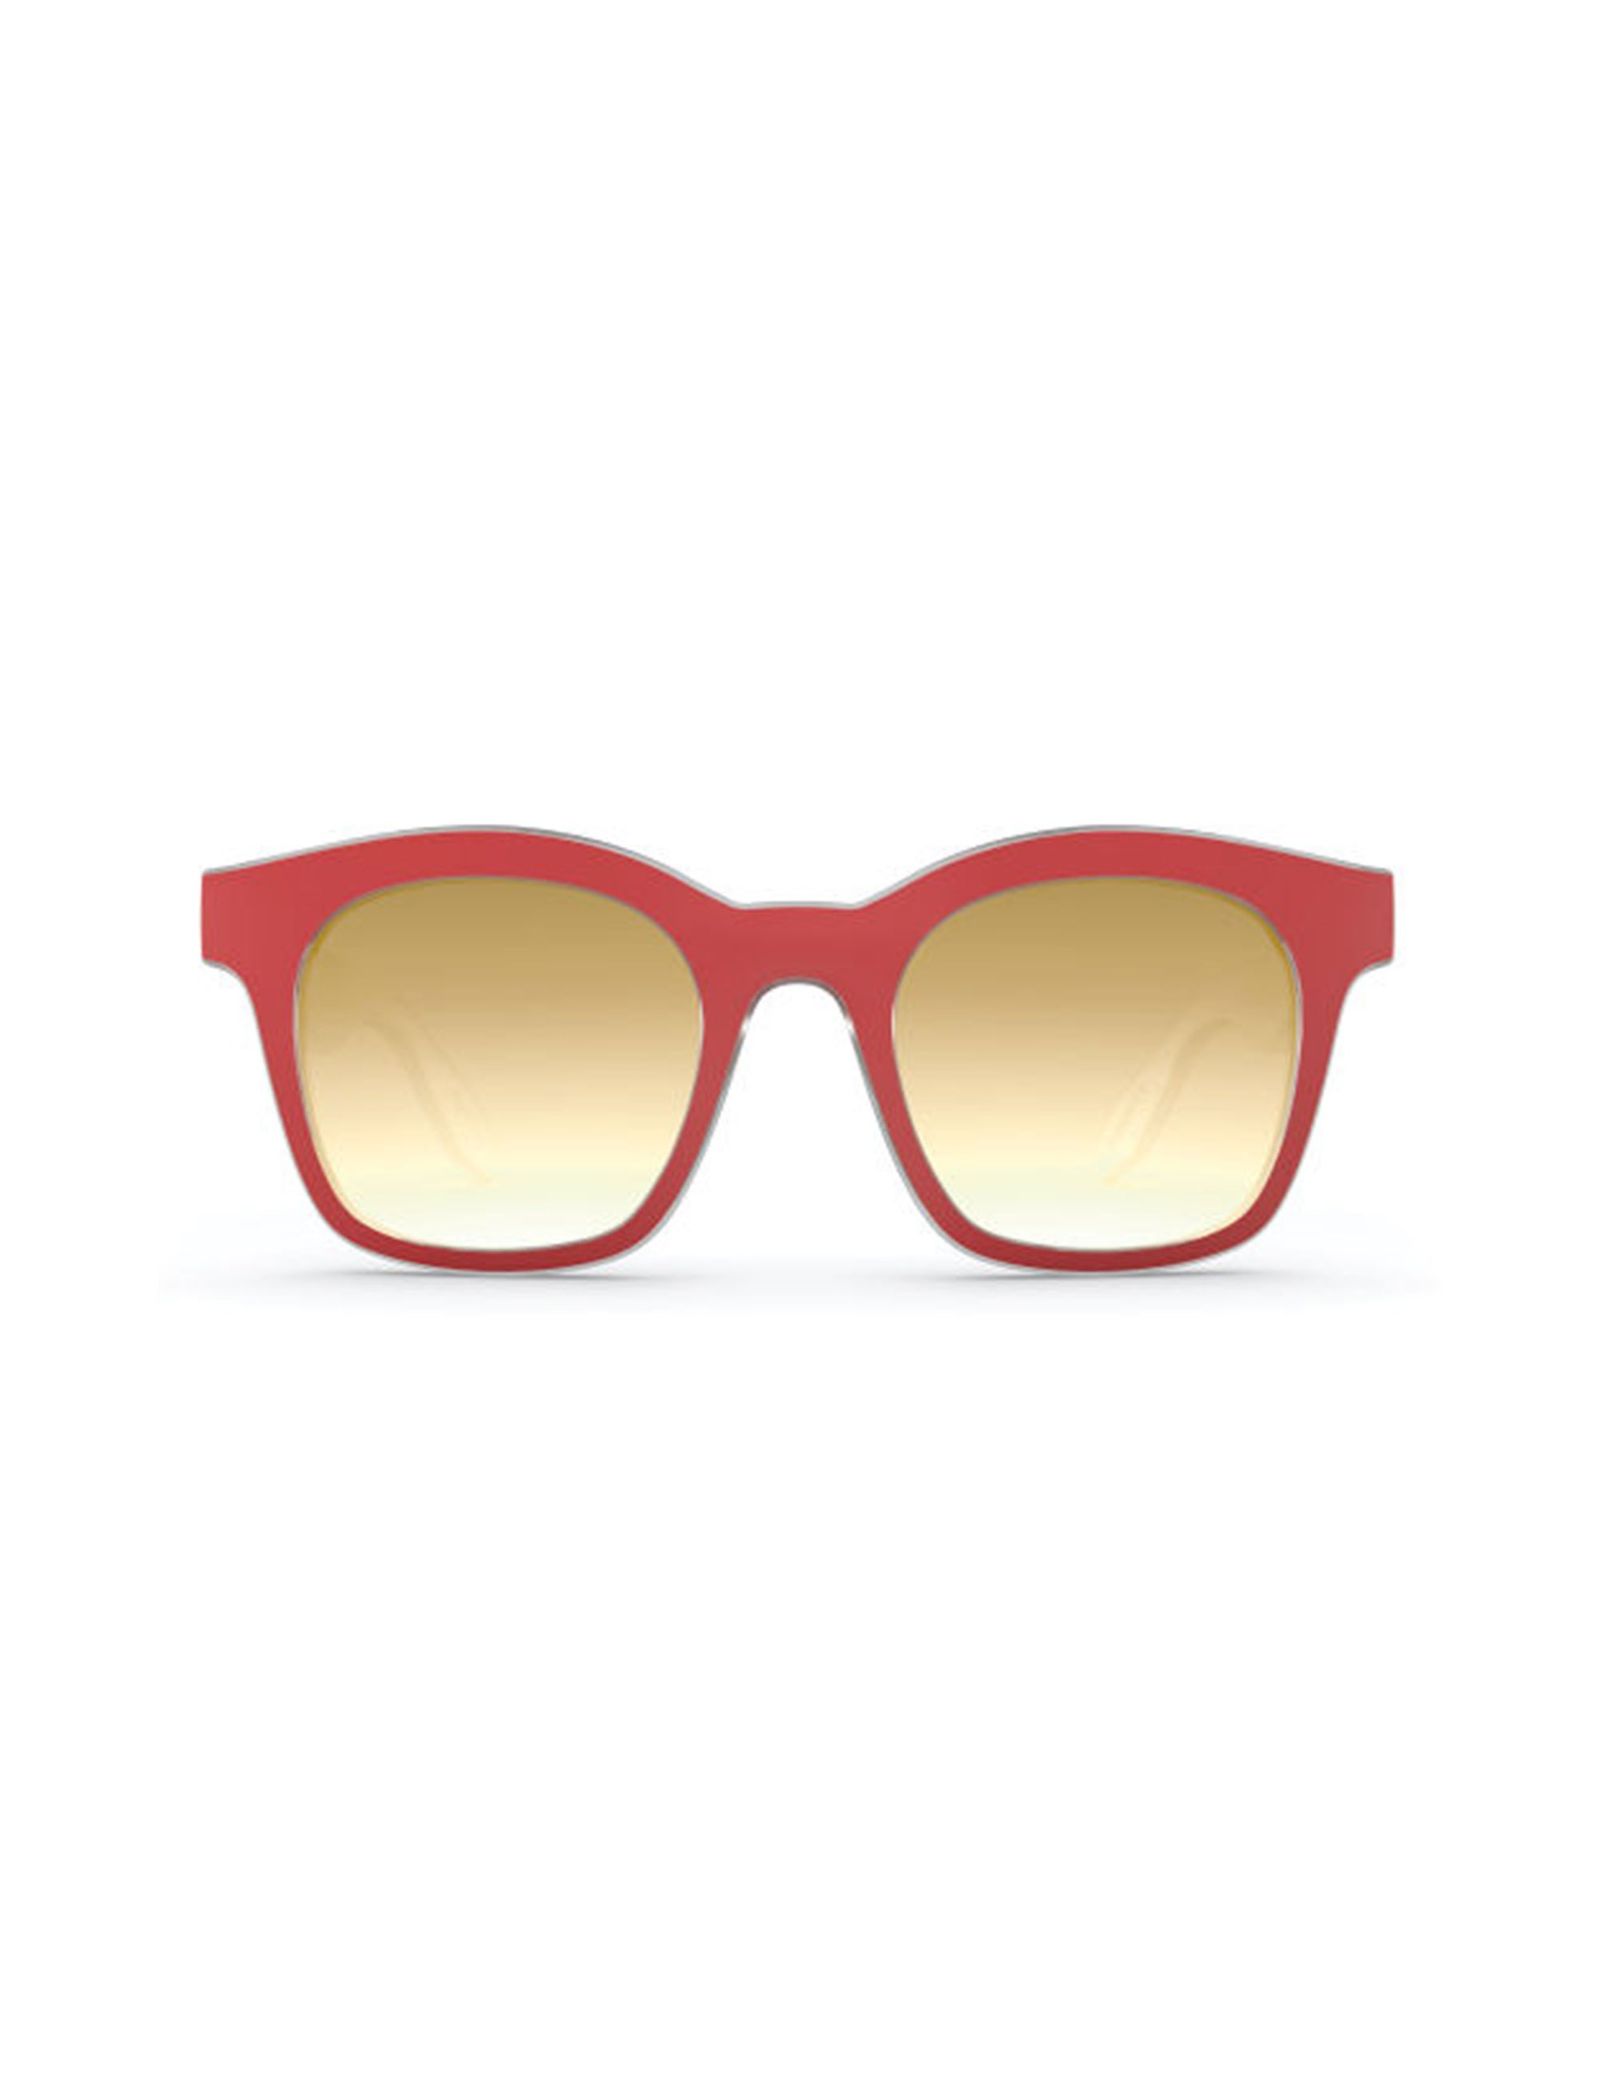 عینک آفتابی ویفرر بزرگسال - سواچ - قرمز و کريستال - 2